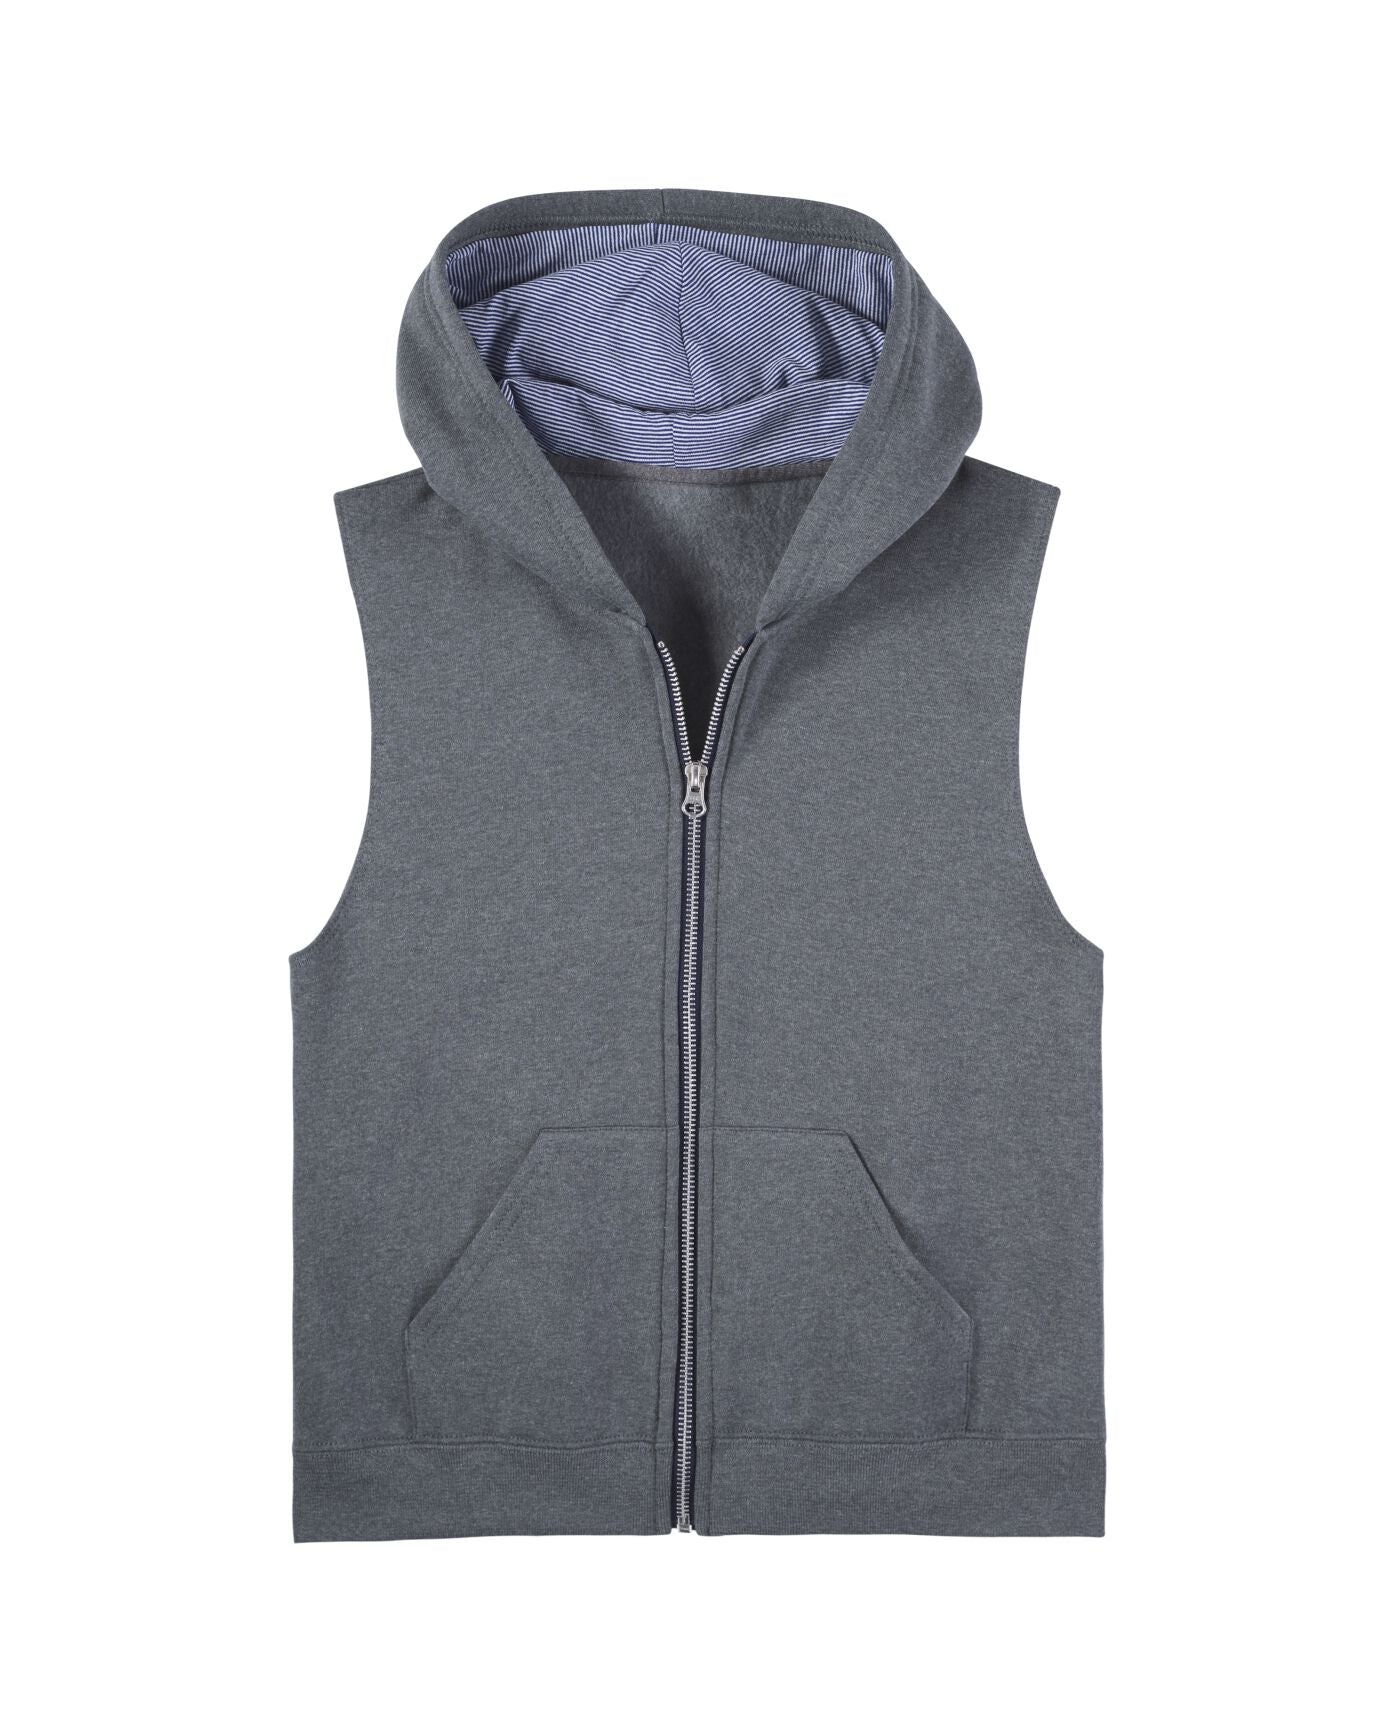 Boys' Fleece Full Zip Sleeveless Vest, Sweatshirts, Hoodies, Sweatpants & Joggers